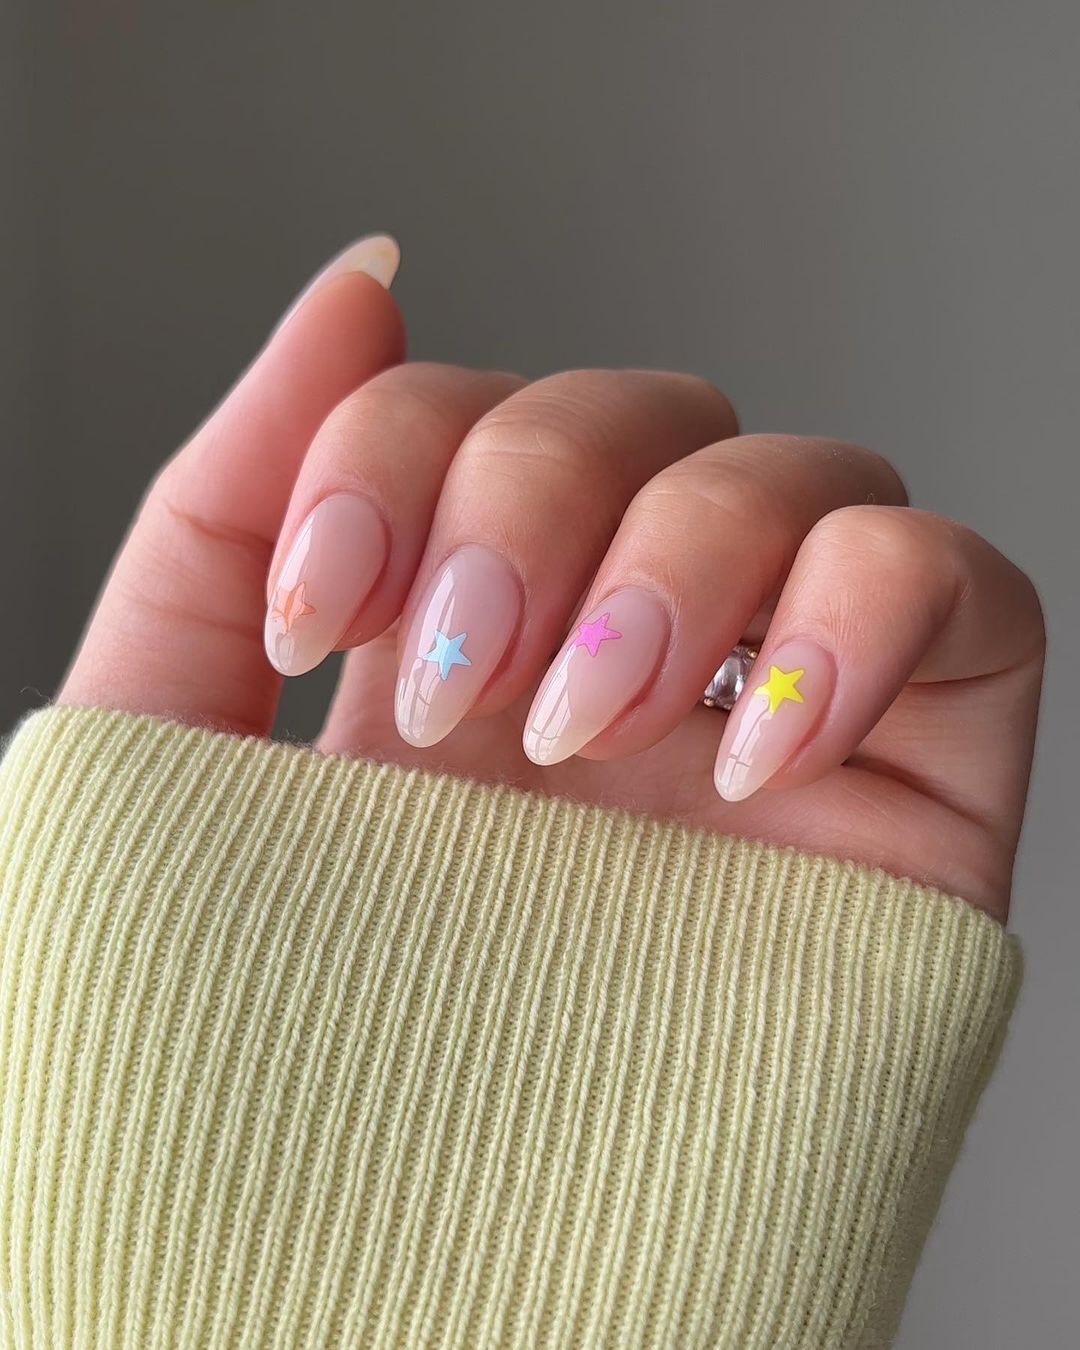 Short Spring Acrylic Nails